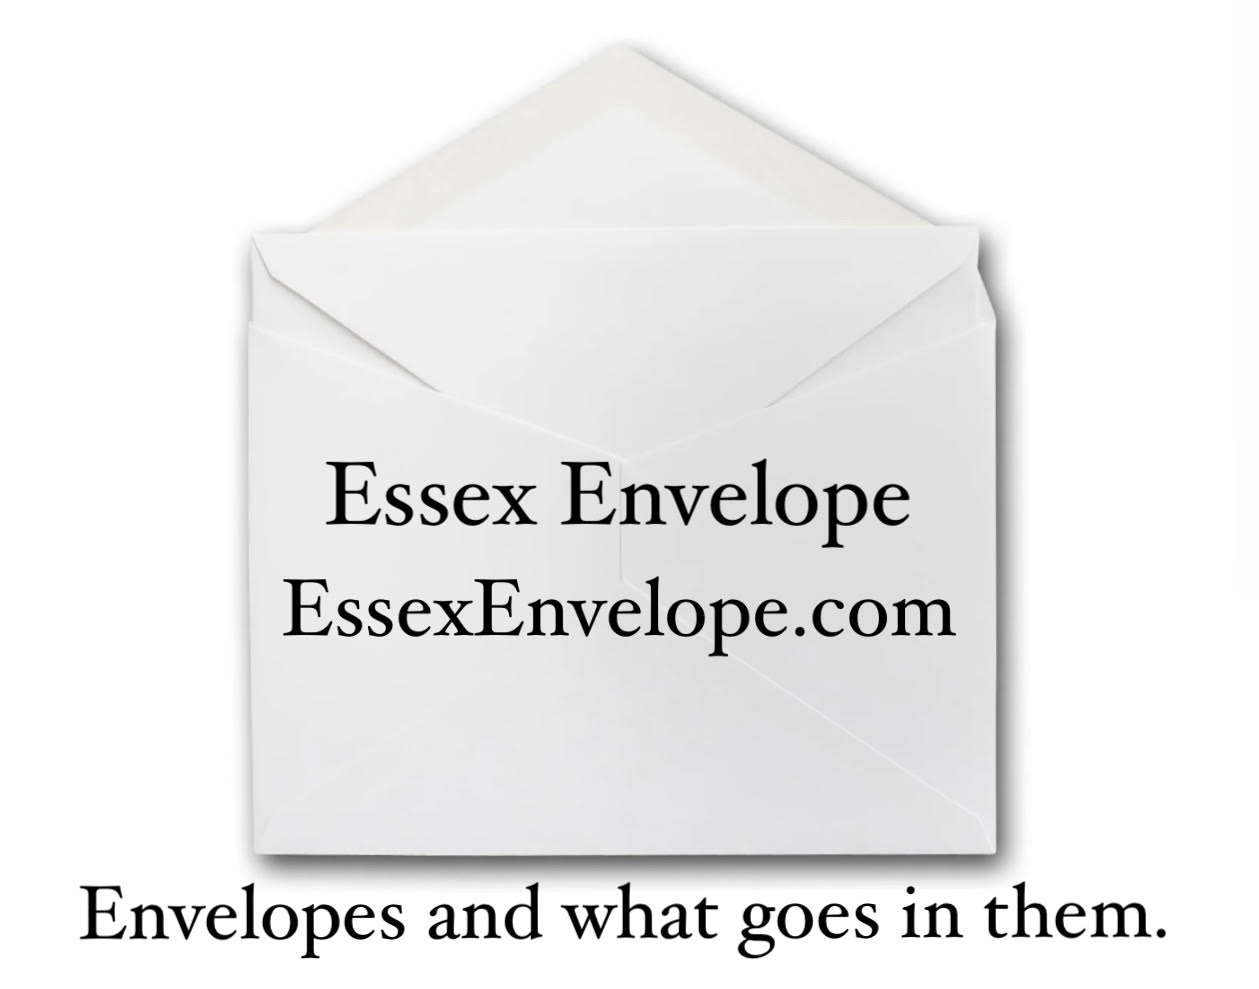 Essex Envelope